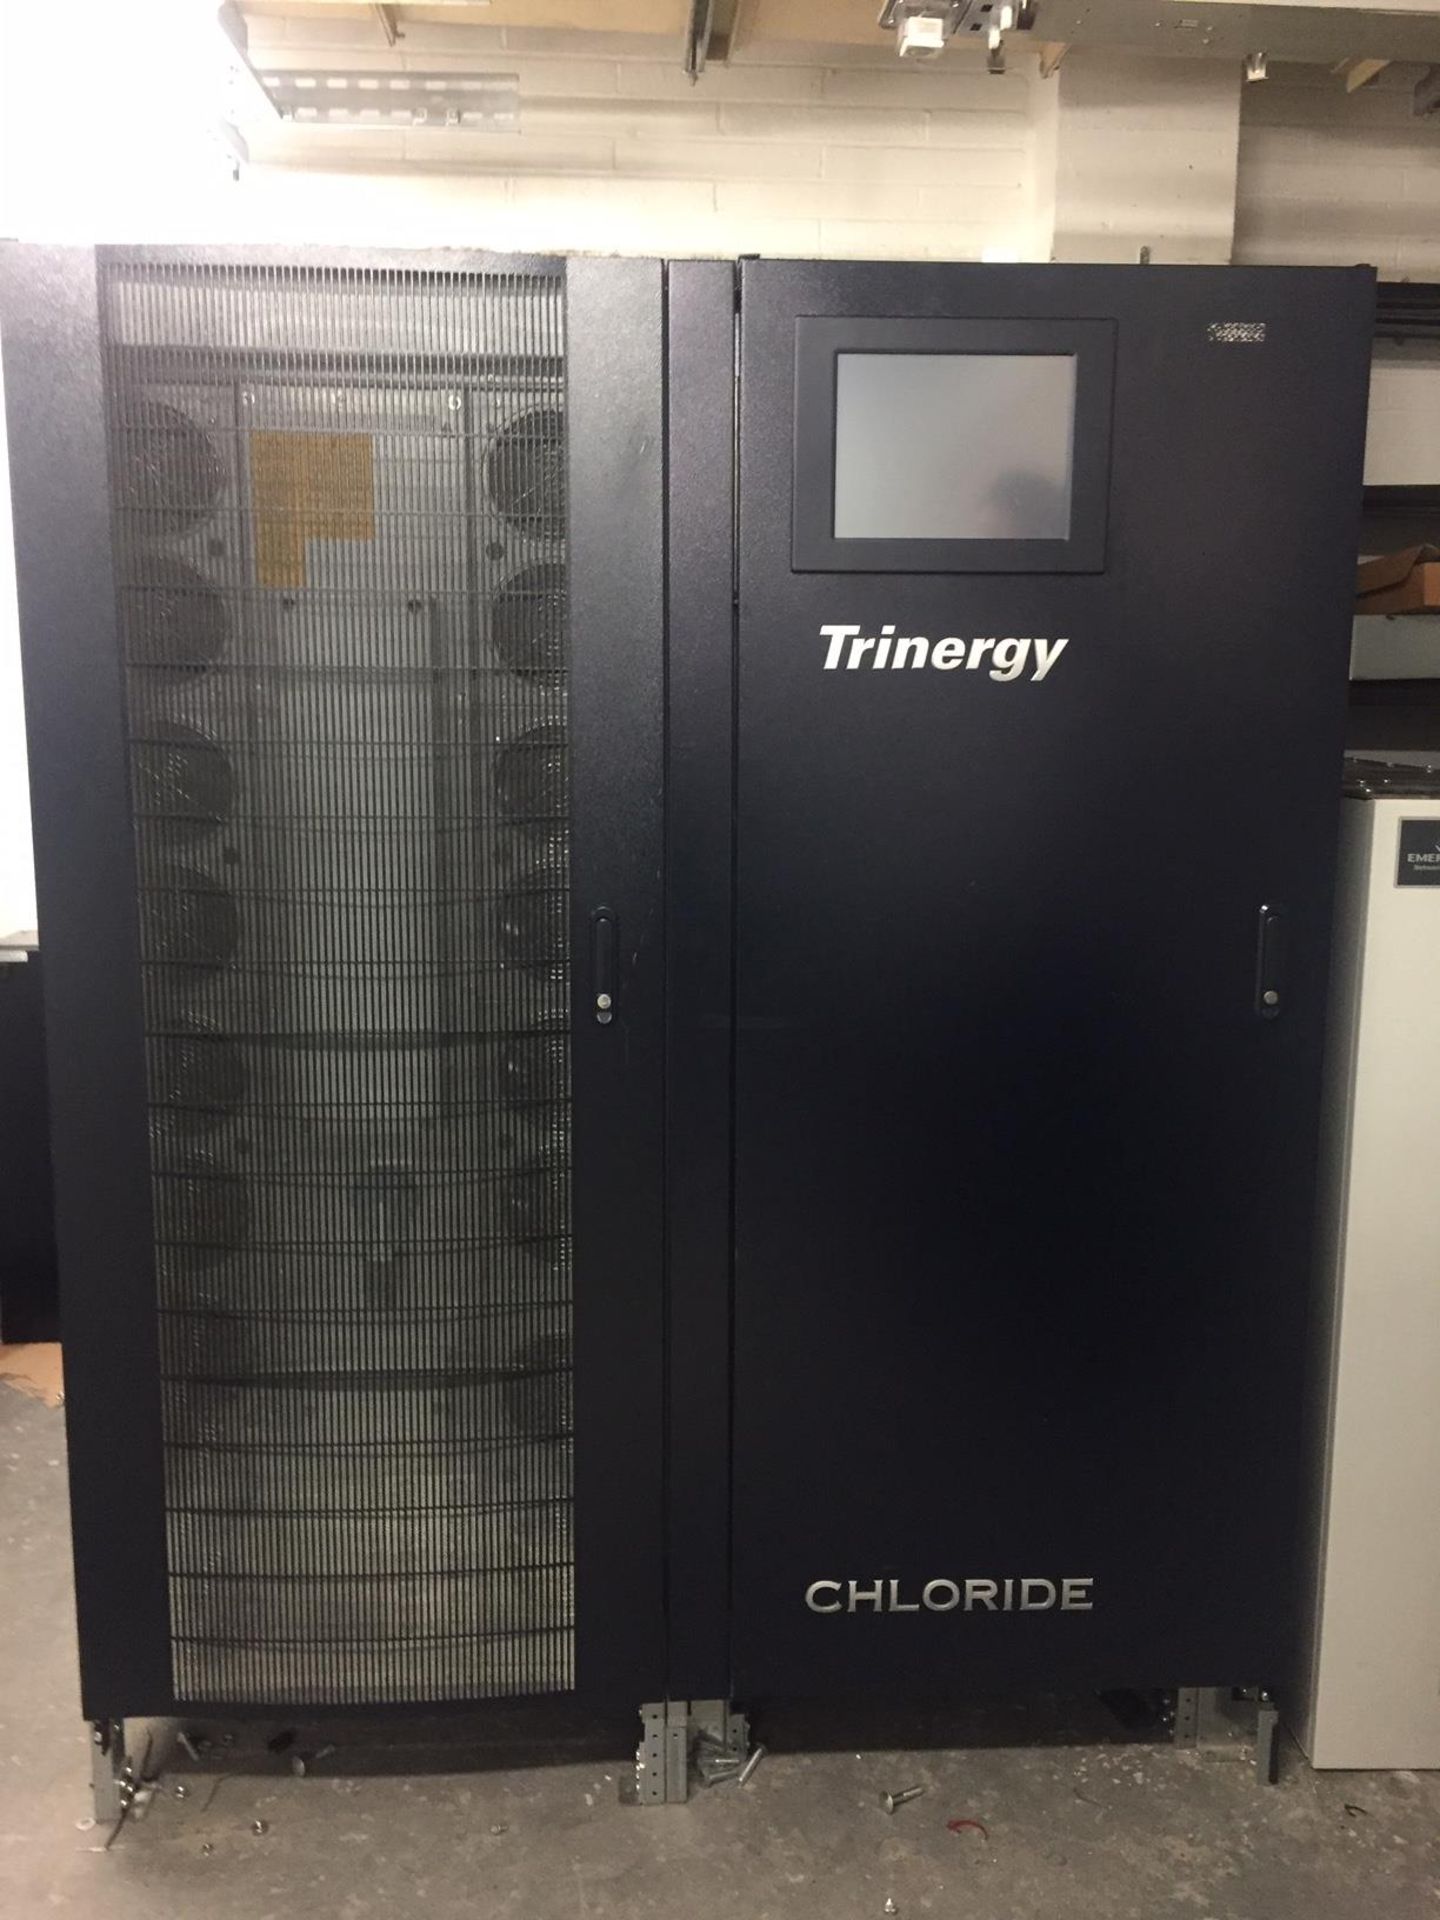 Chloride Trinergy Type I/OBOX 200 KVA Uninterruptable Power Supply - Image 3 of 7